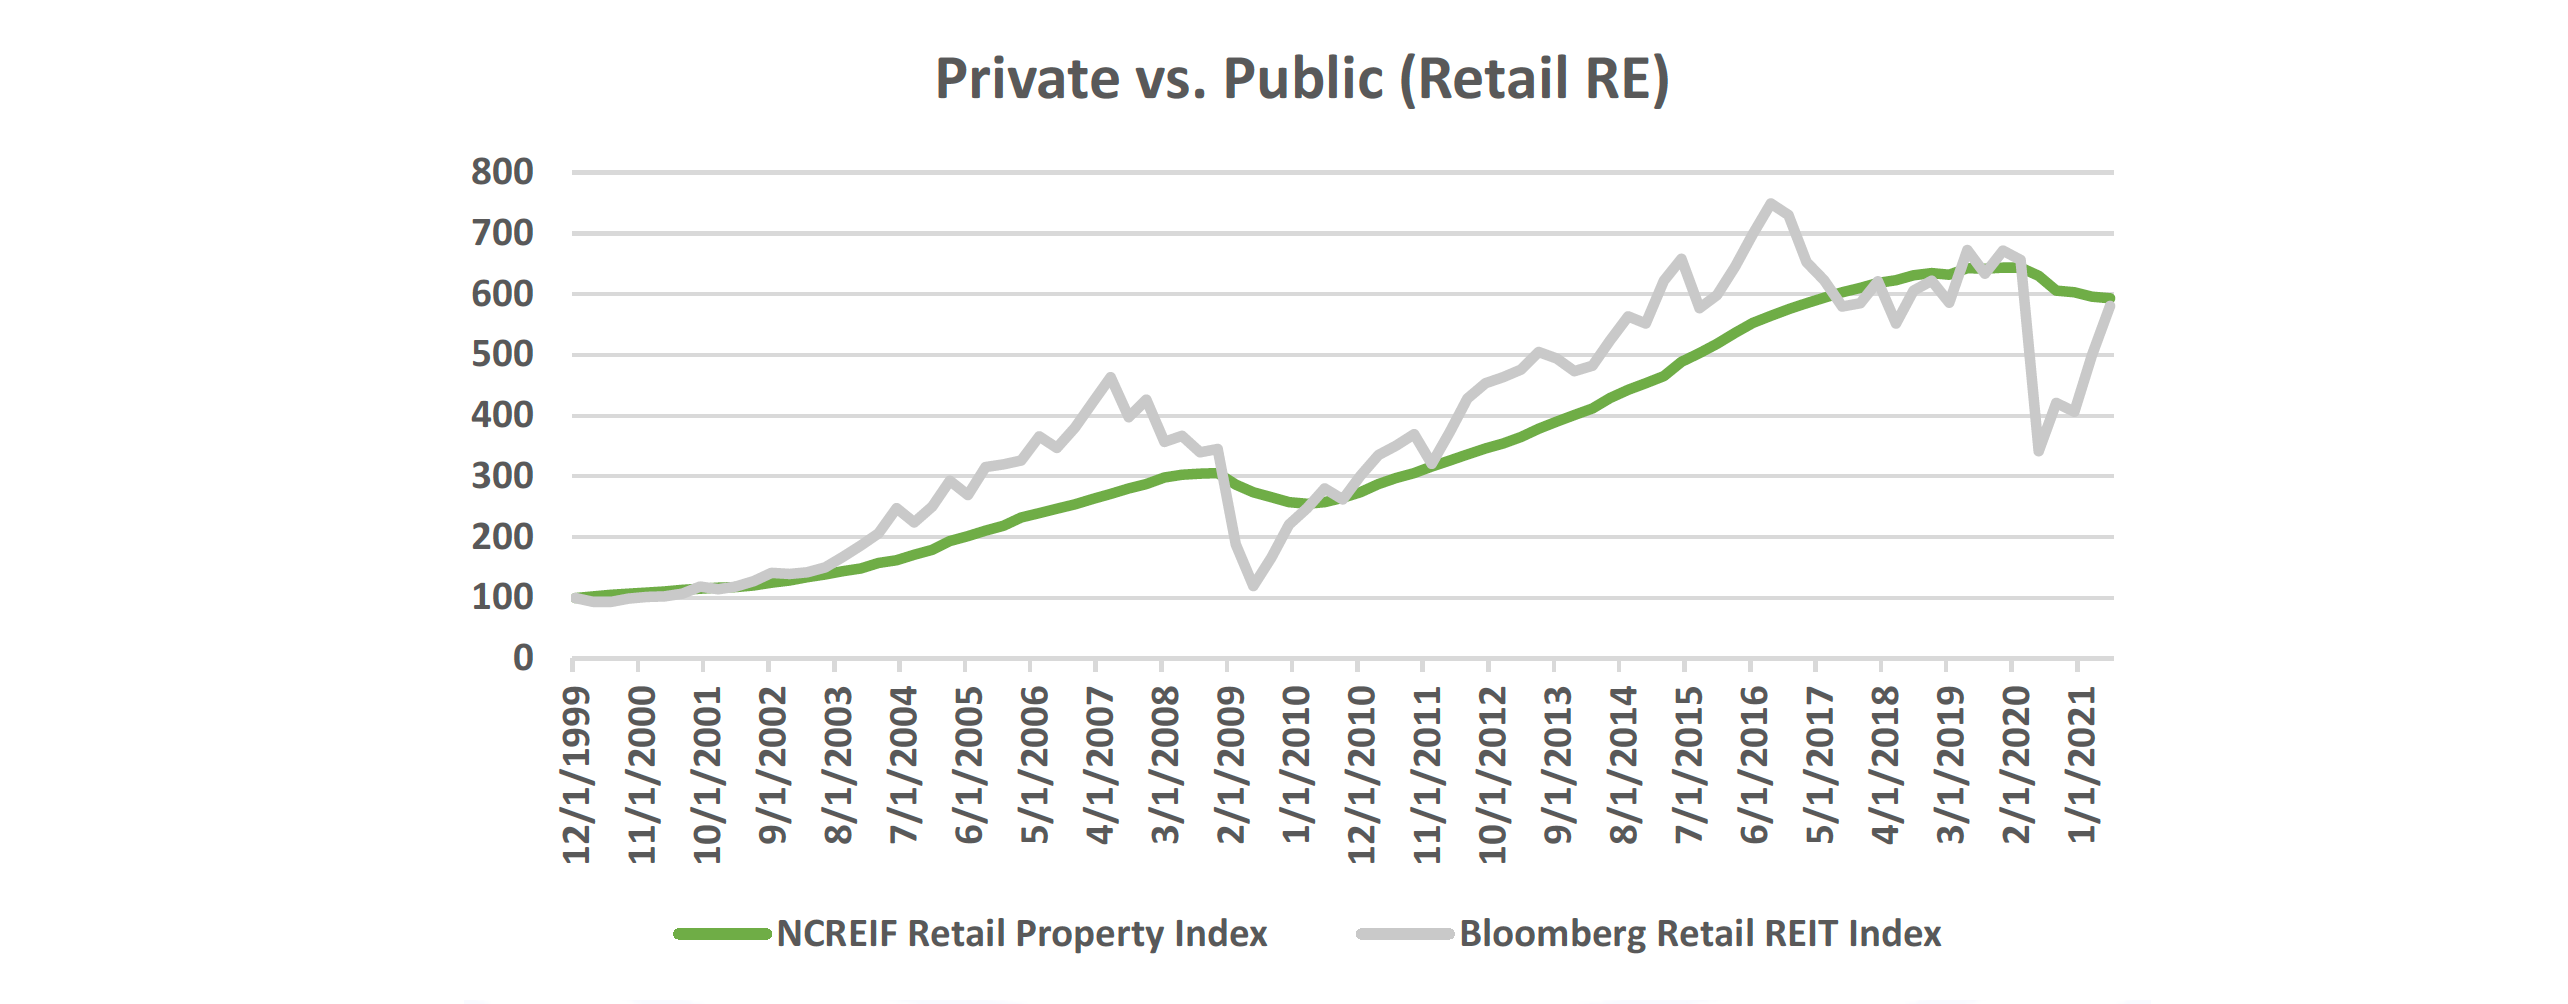 Private vs Public - Retail RE